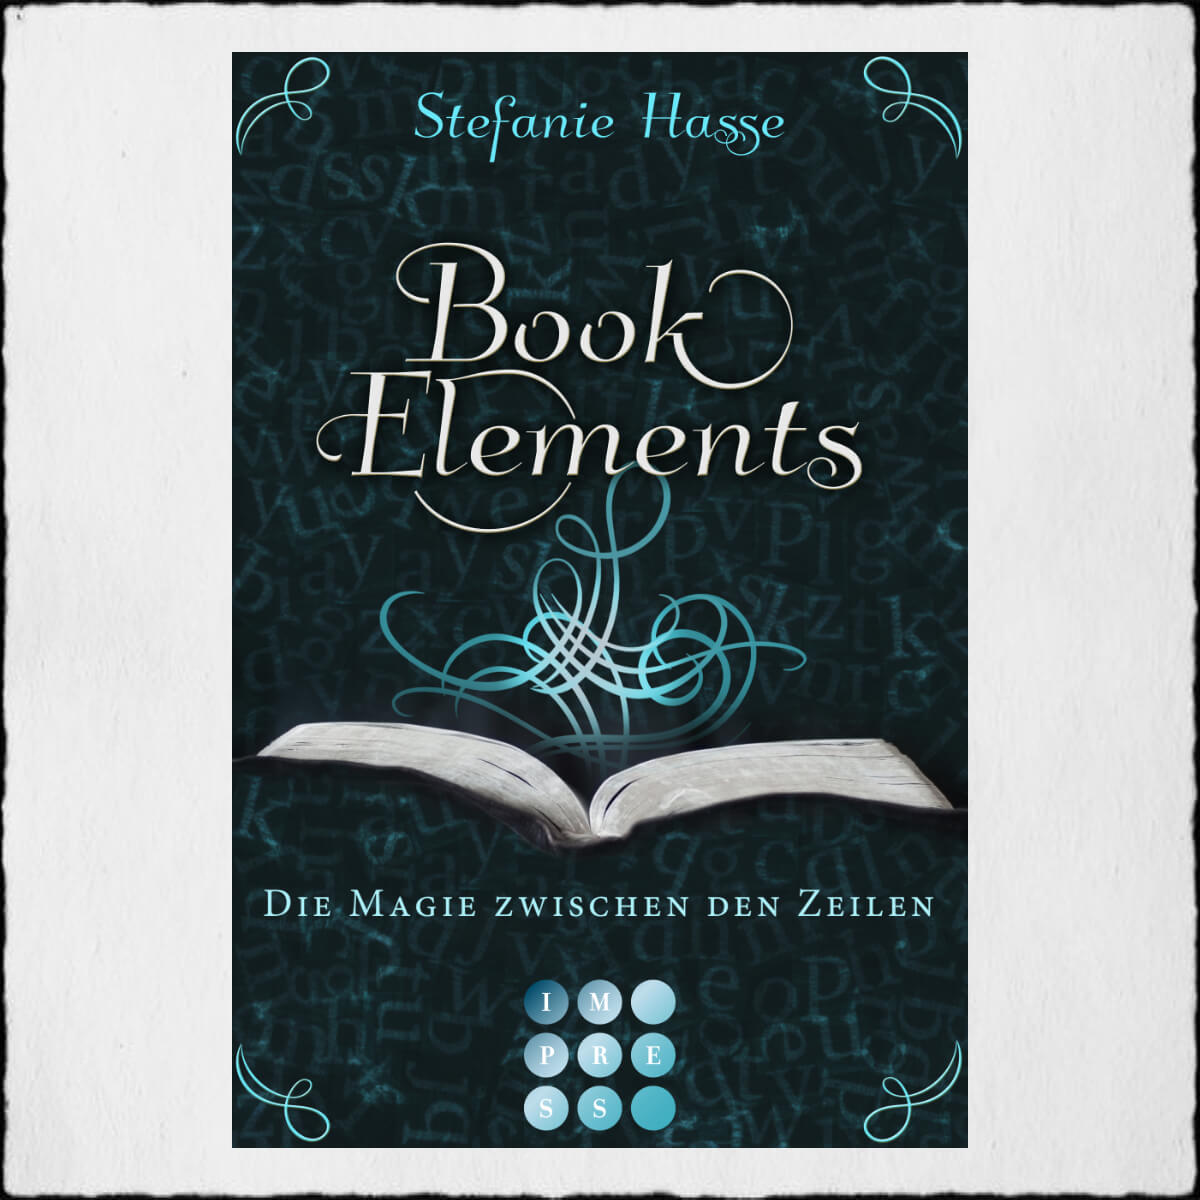 Stefanie Hasse, “BookElements: Die Magie zwischen den Zeilen” ©2015 Im.press by Carlsen Verlag Hamburg